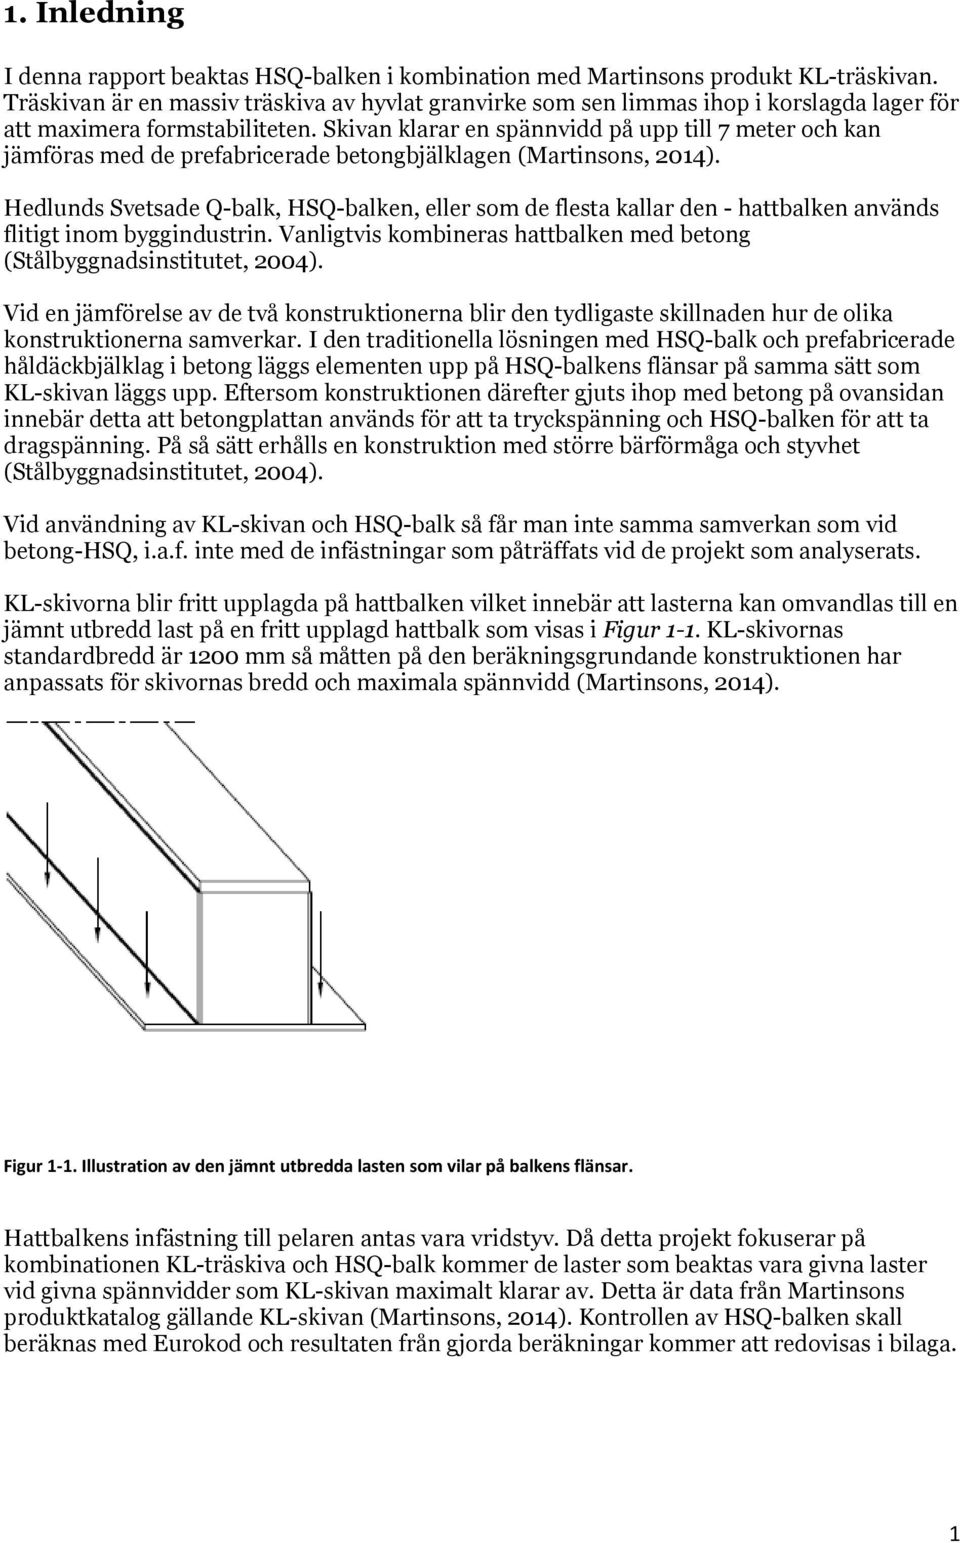 Skivan klarar en spännvidd på upp till 7 meter och kan jämföras med de prefabricerade betongbjälklagen (Martinsons, 2014).